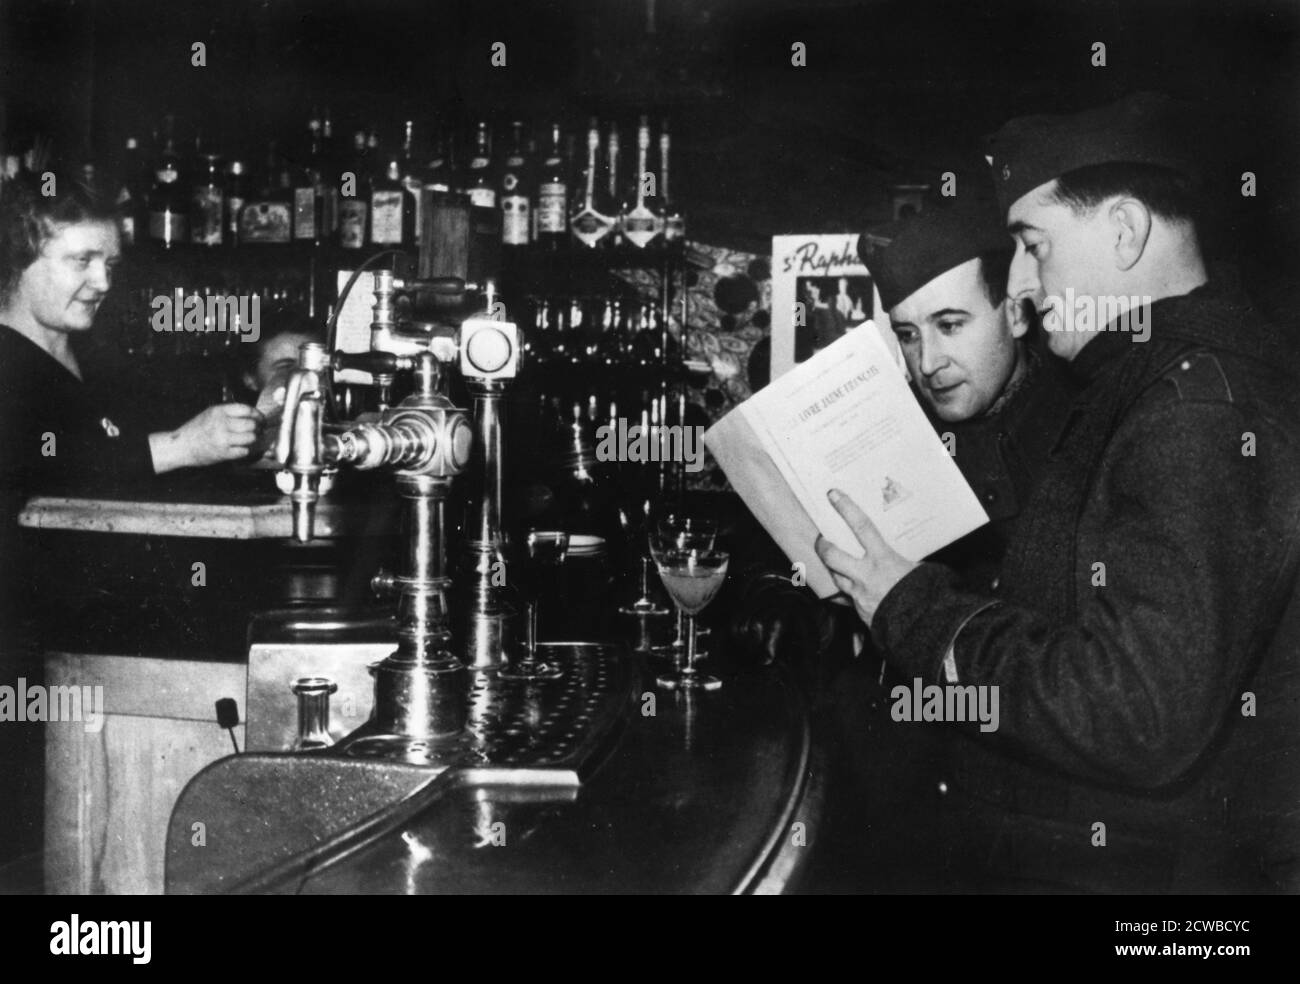 Zwei französische Soldaten auf Urlaub in einem Café, c1939-1940. Sie sehen sich eine Kopie des Buches Le Livre Jaune Francais an, das vom französischen Außenministerium über diplomatische Verhandlungen zwischen Großbritannien, Frankreich, Polen und Deutschland vor Ausbruch des Zweiten Weltkriegs veröffentlicht wurde Der Fotograf ist unbekannt. Stockfoto